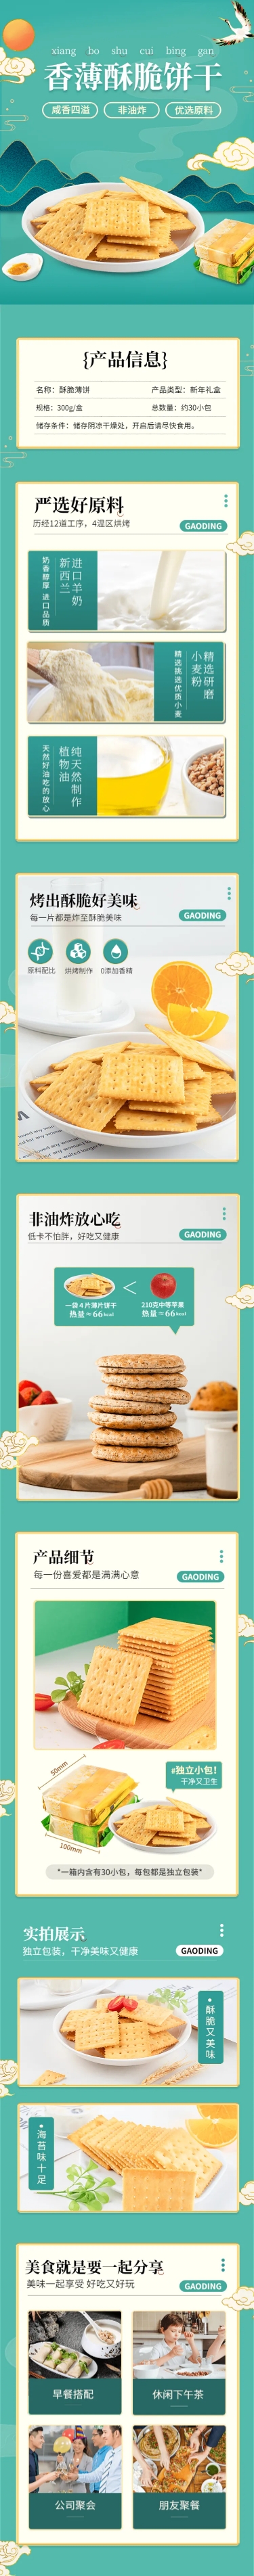 零食饼干类产品展示详情页预览效果